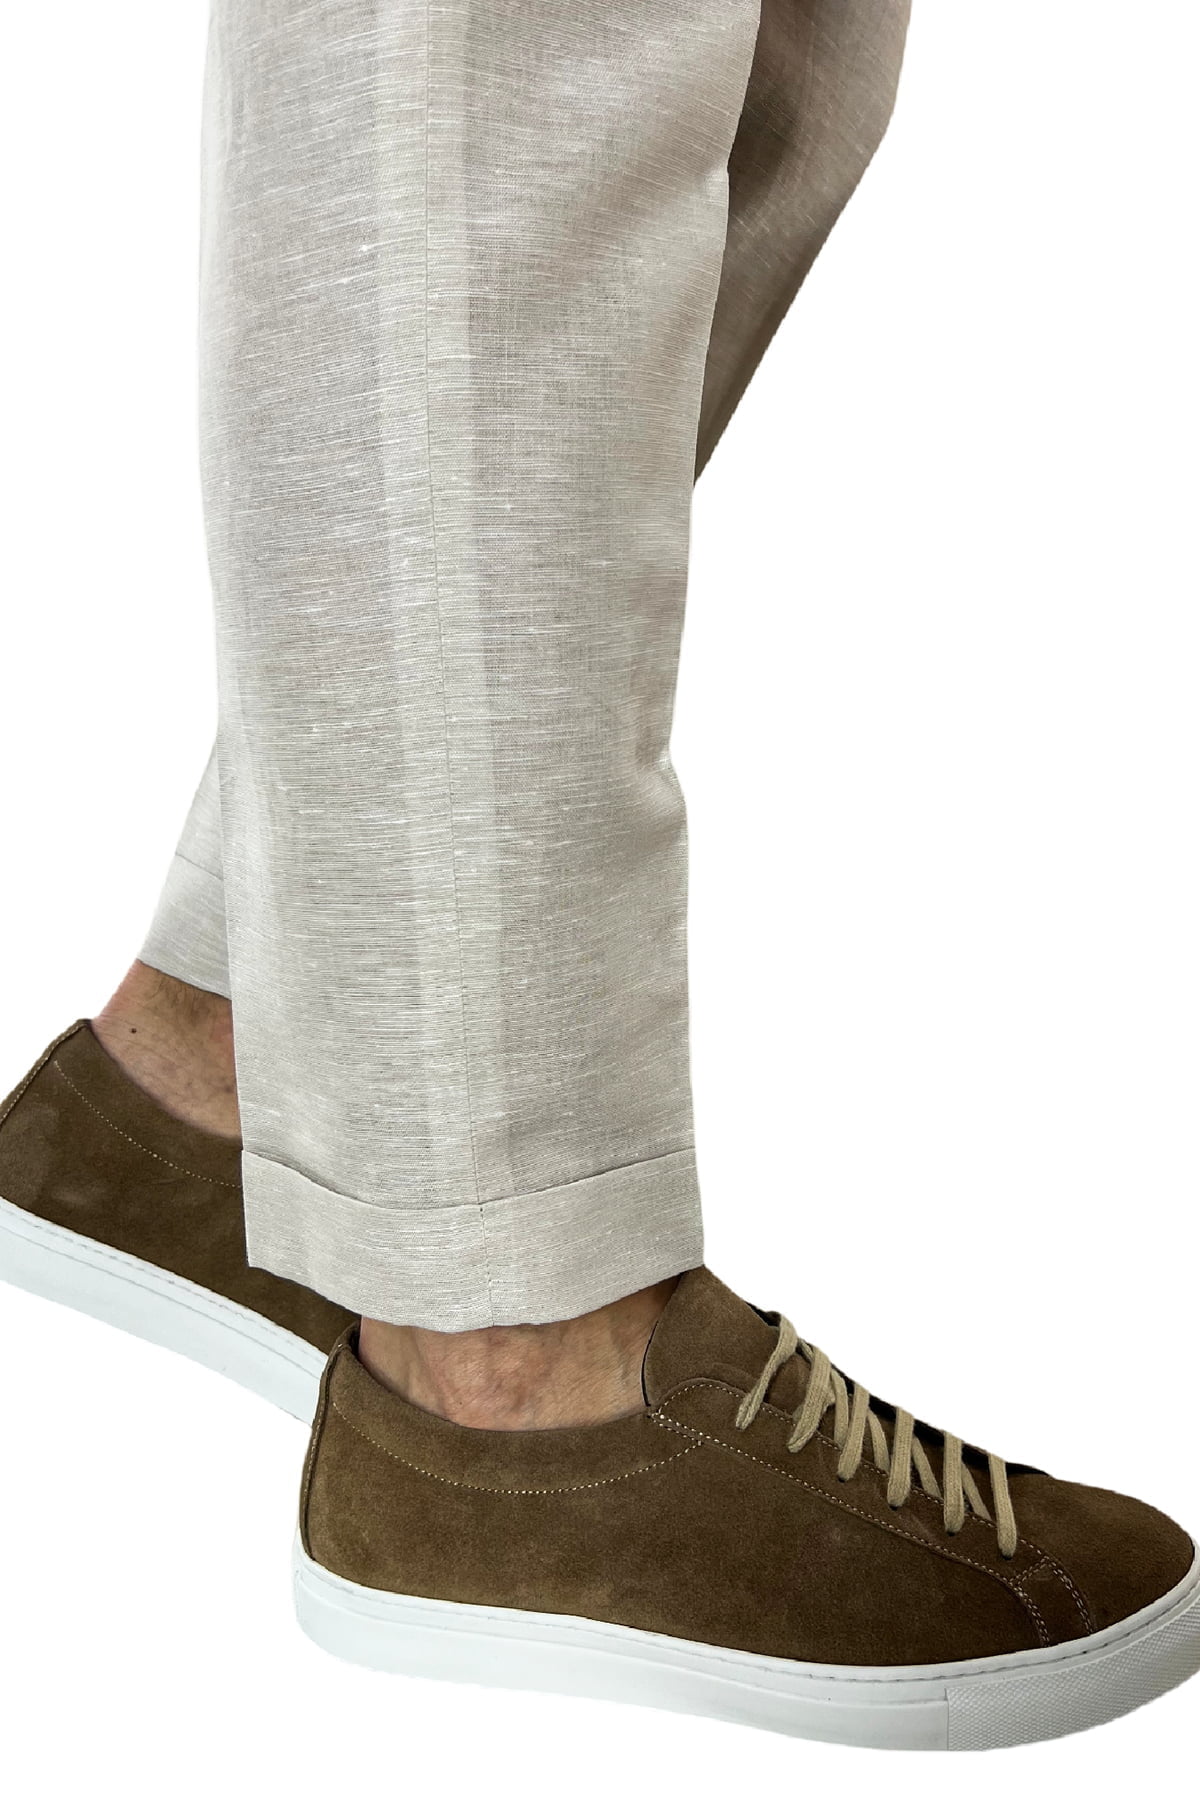 Pantalaccio uomo beige in lino e cotone tasca america con doppia pence e laccio in vita risvolto 4cm